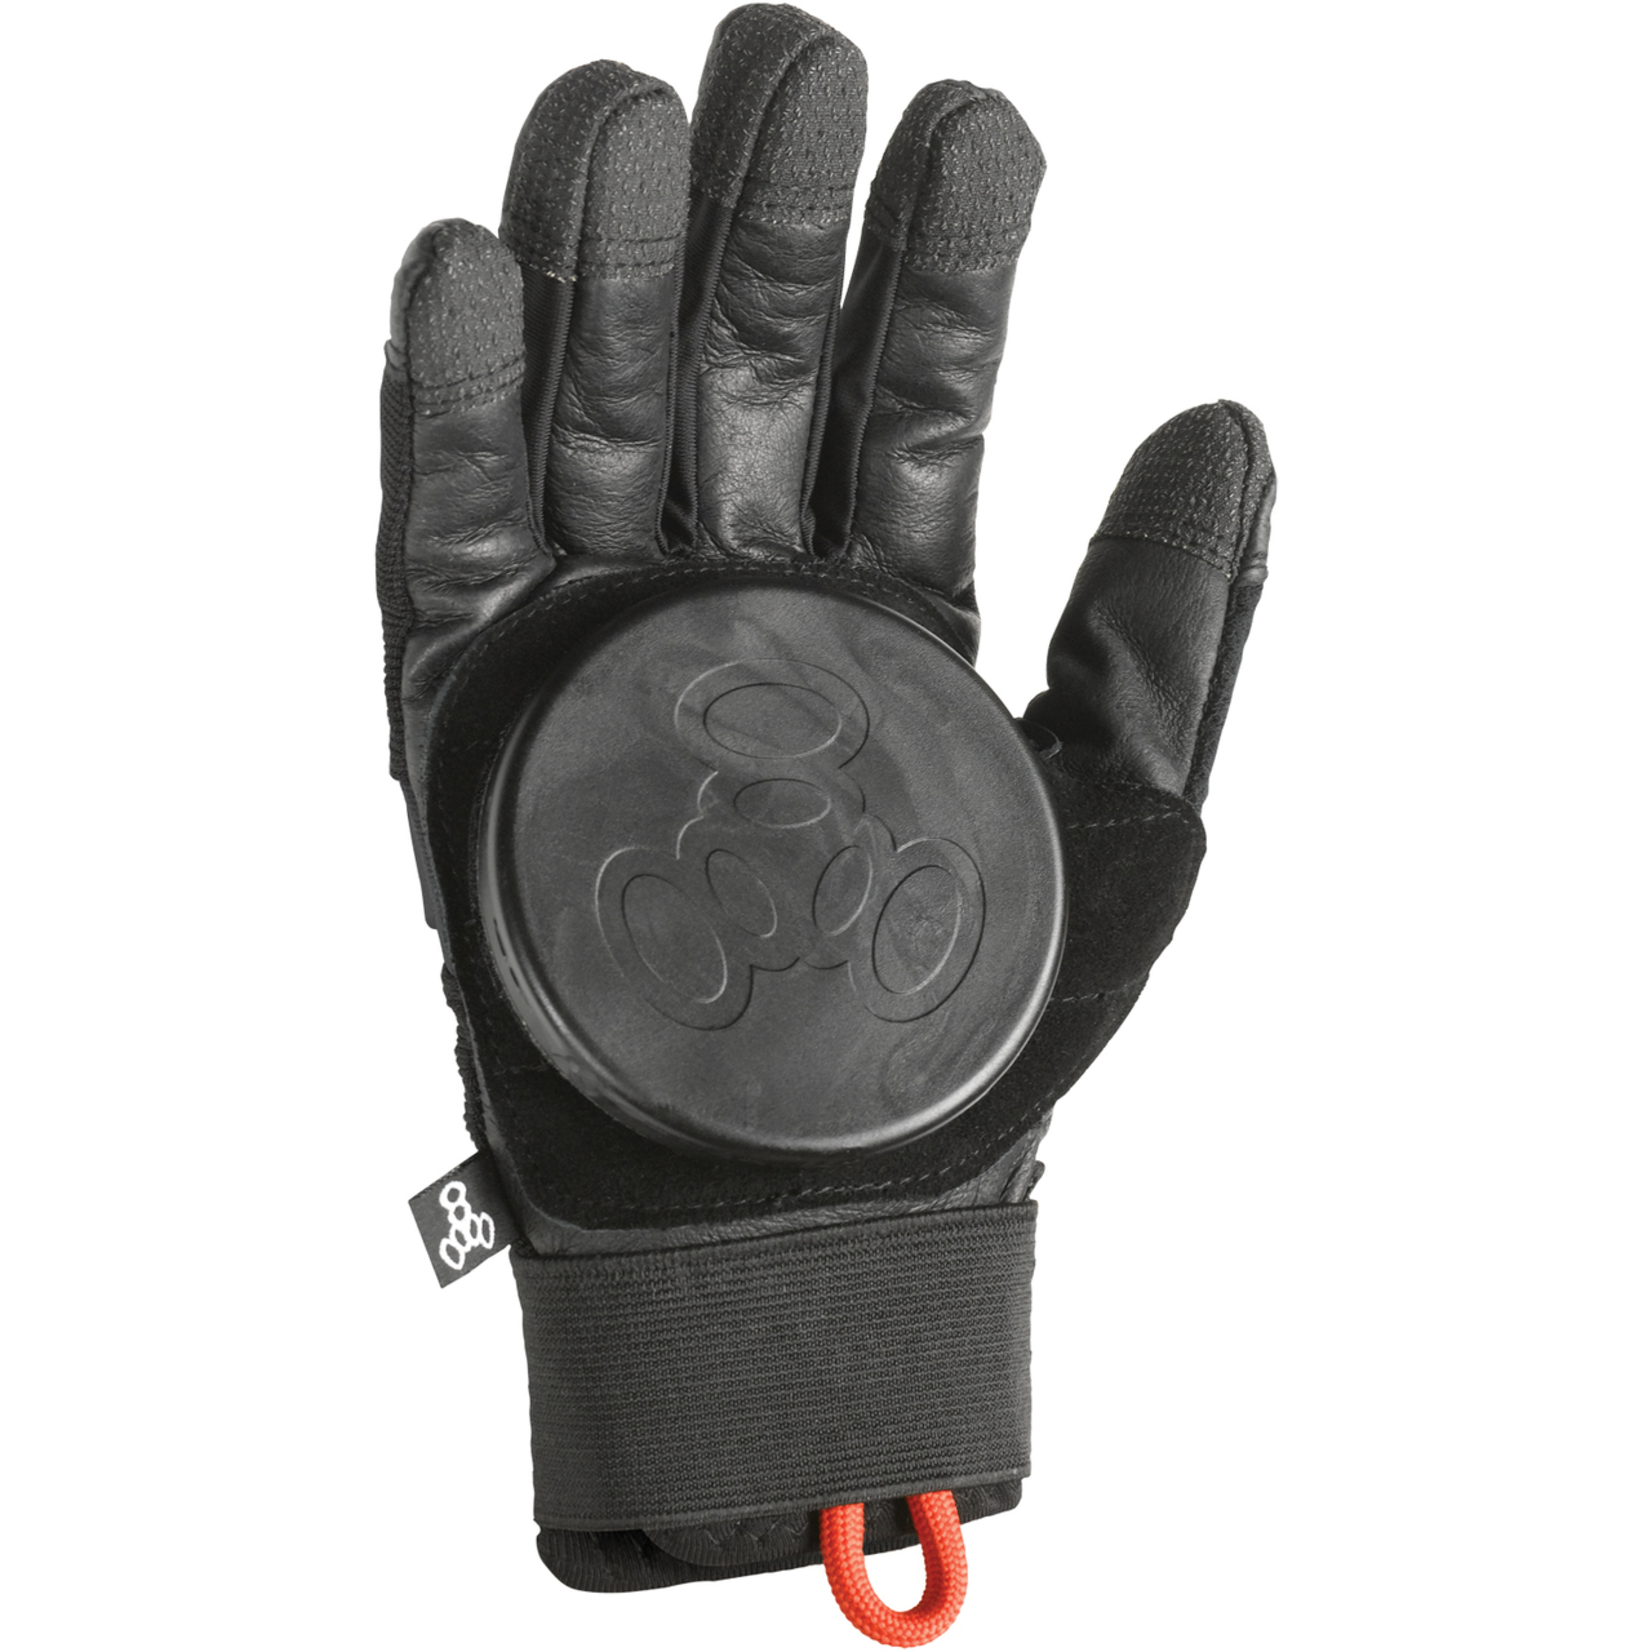 Triple 8 Downhill Longboard Gloves